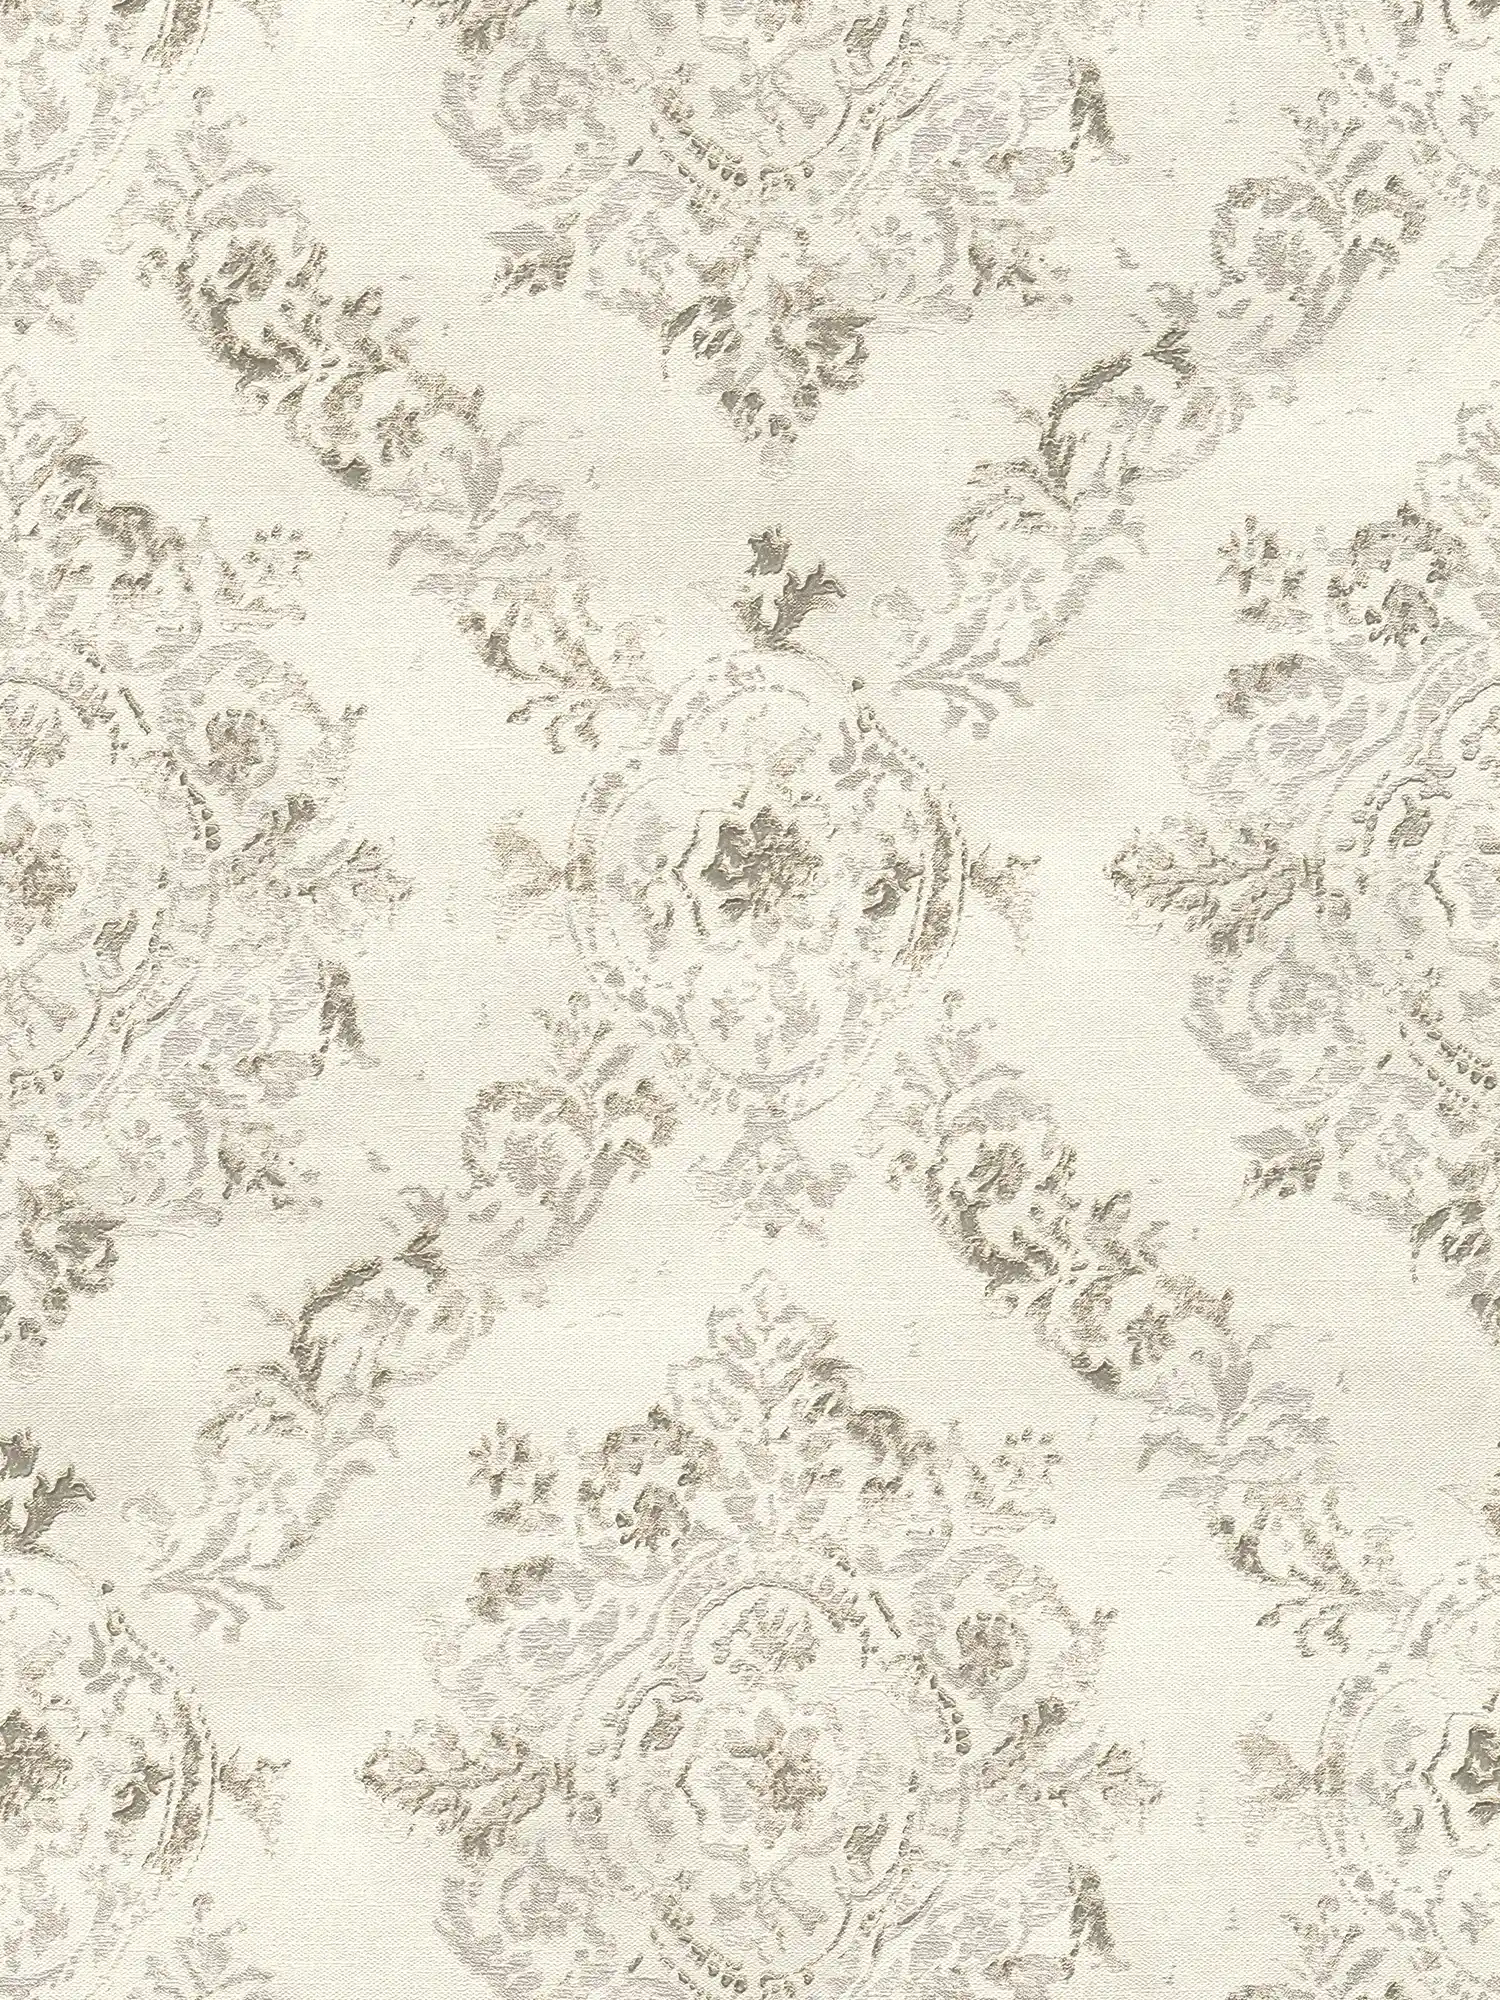 Ornament wallpaper with linen structure in vintage look - metallic, cream, beige
